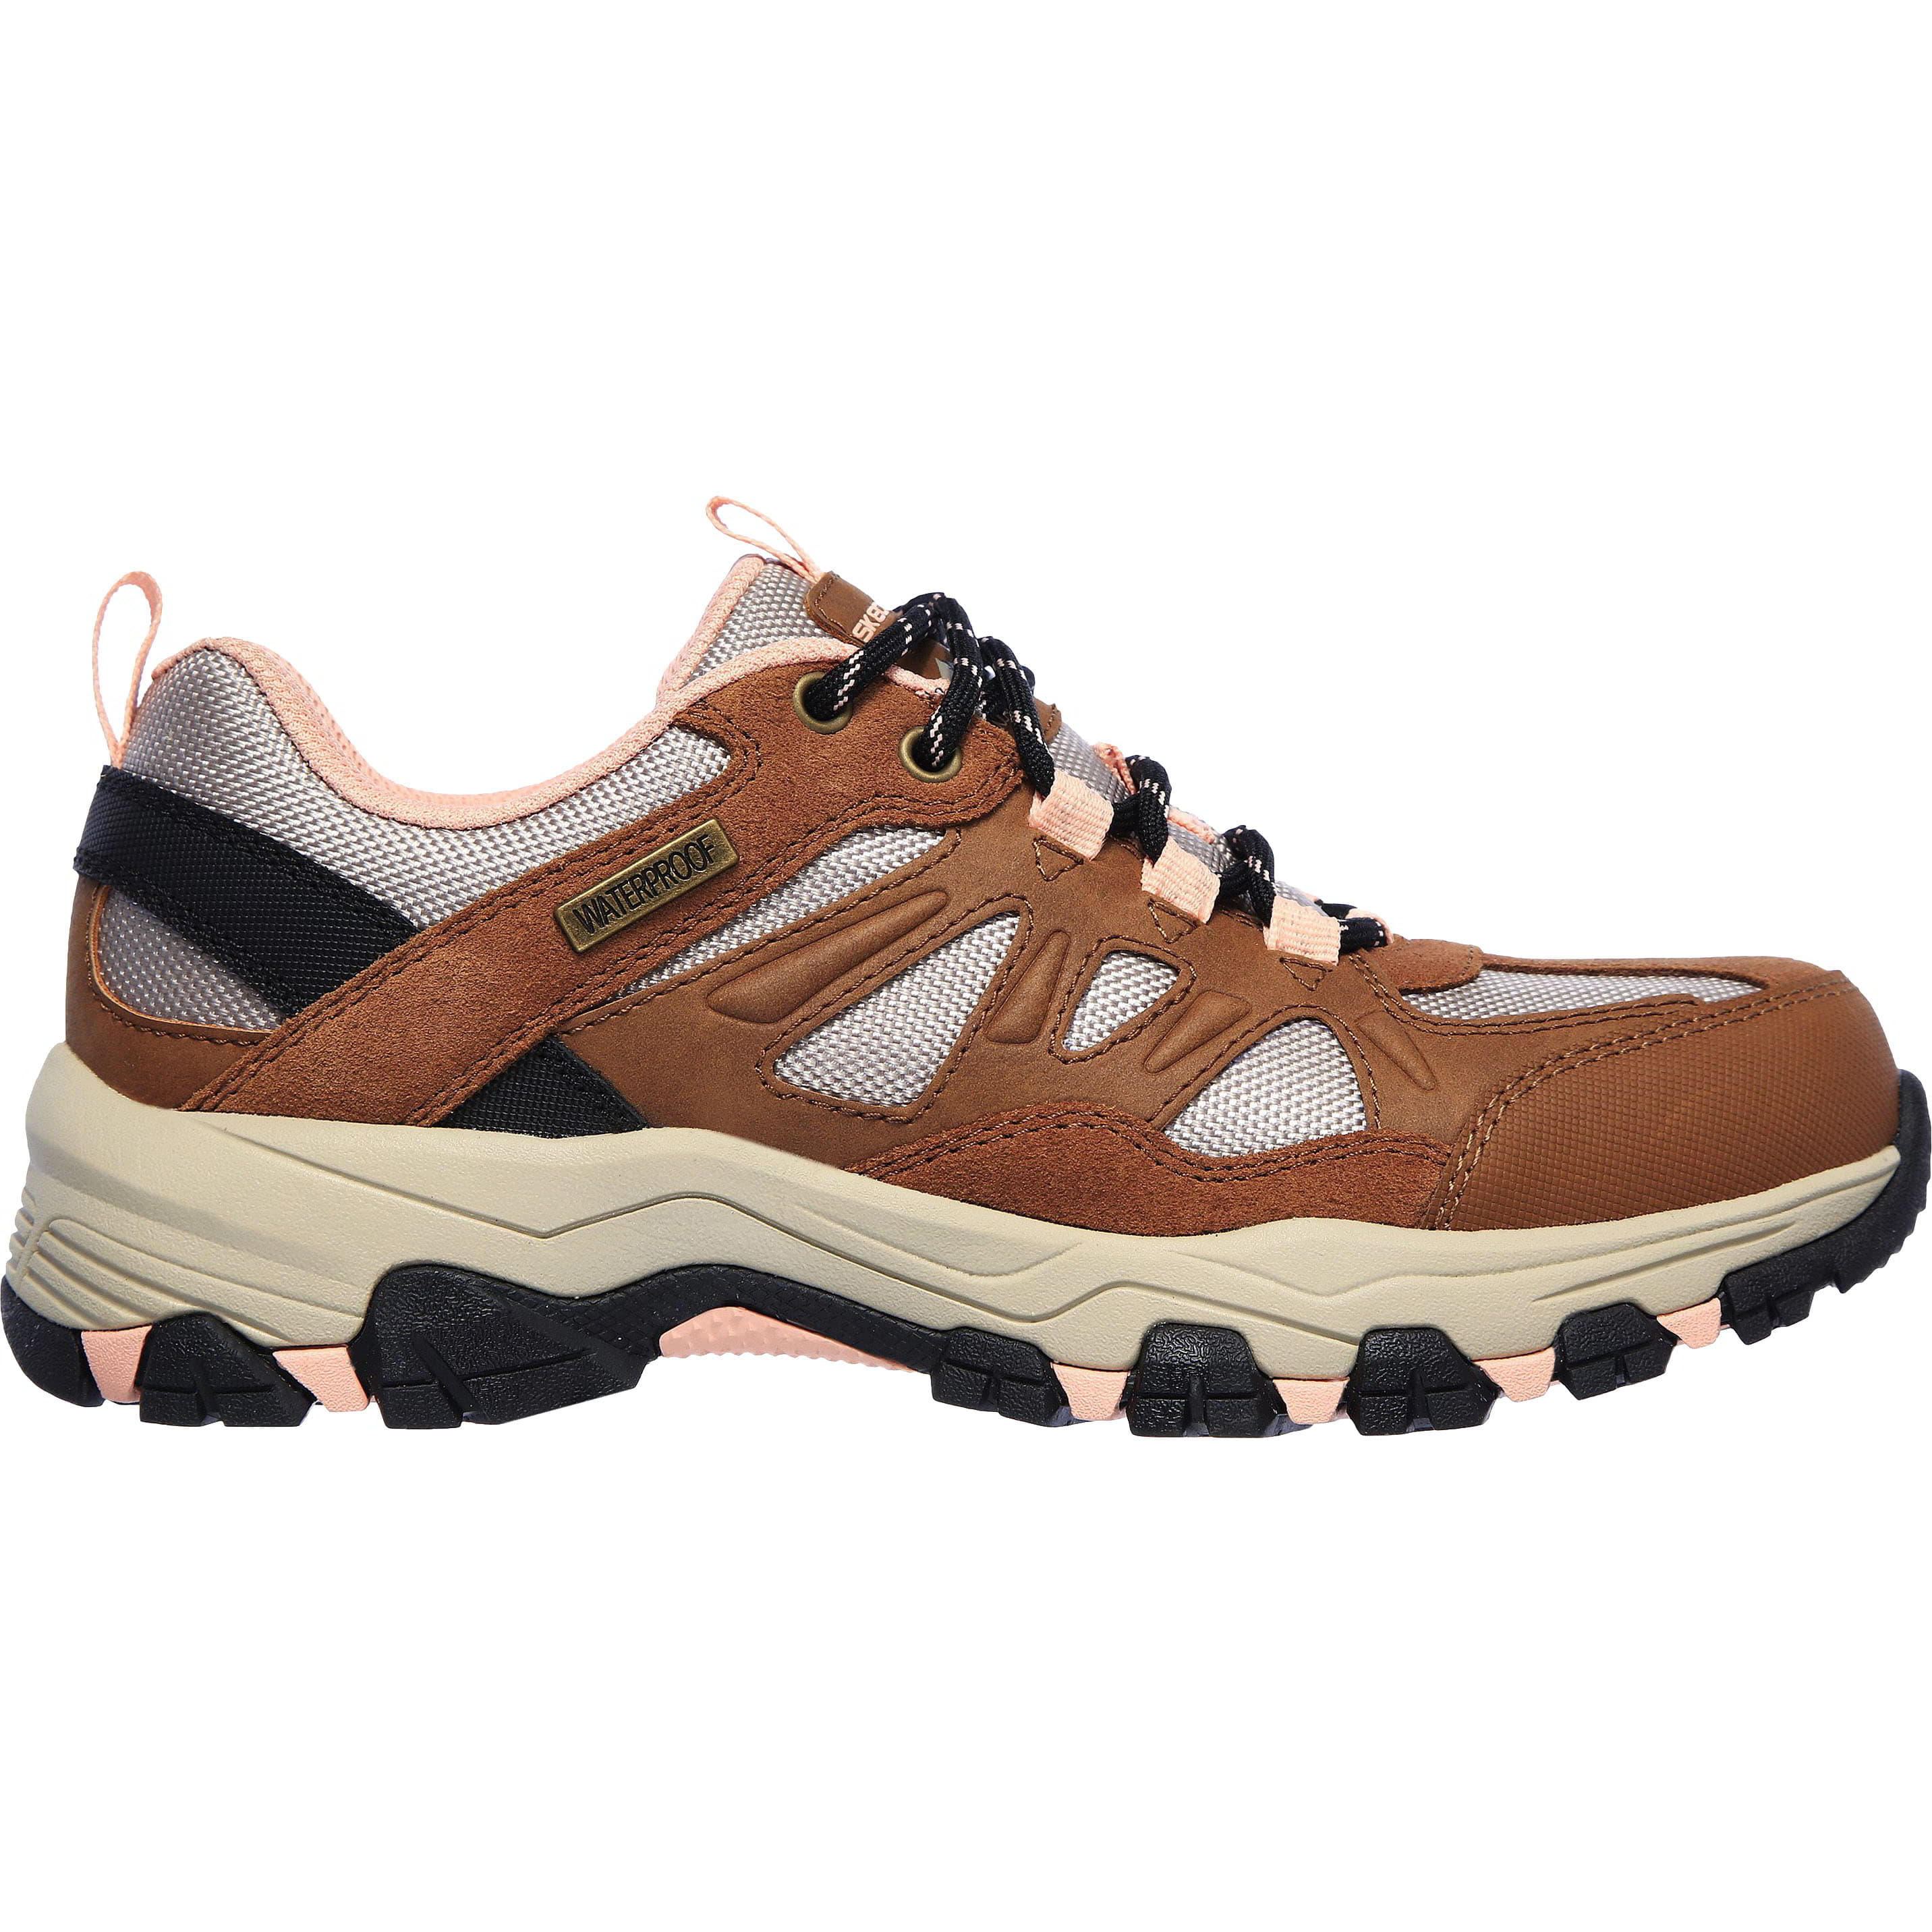 Skechers Womens Selment West Highland Waterproof Walking Shoes Trainers - UK 6.5 Brown 2951